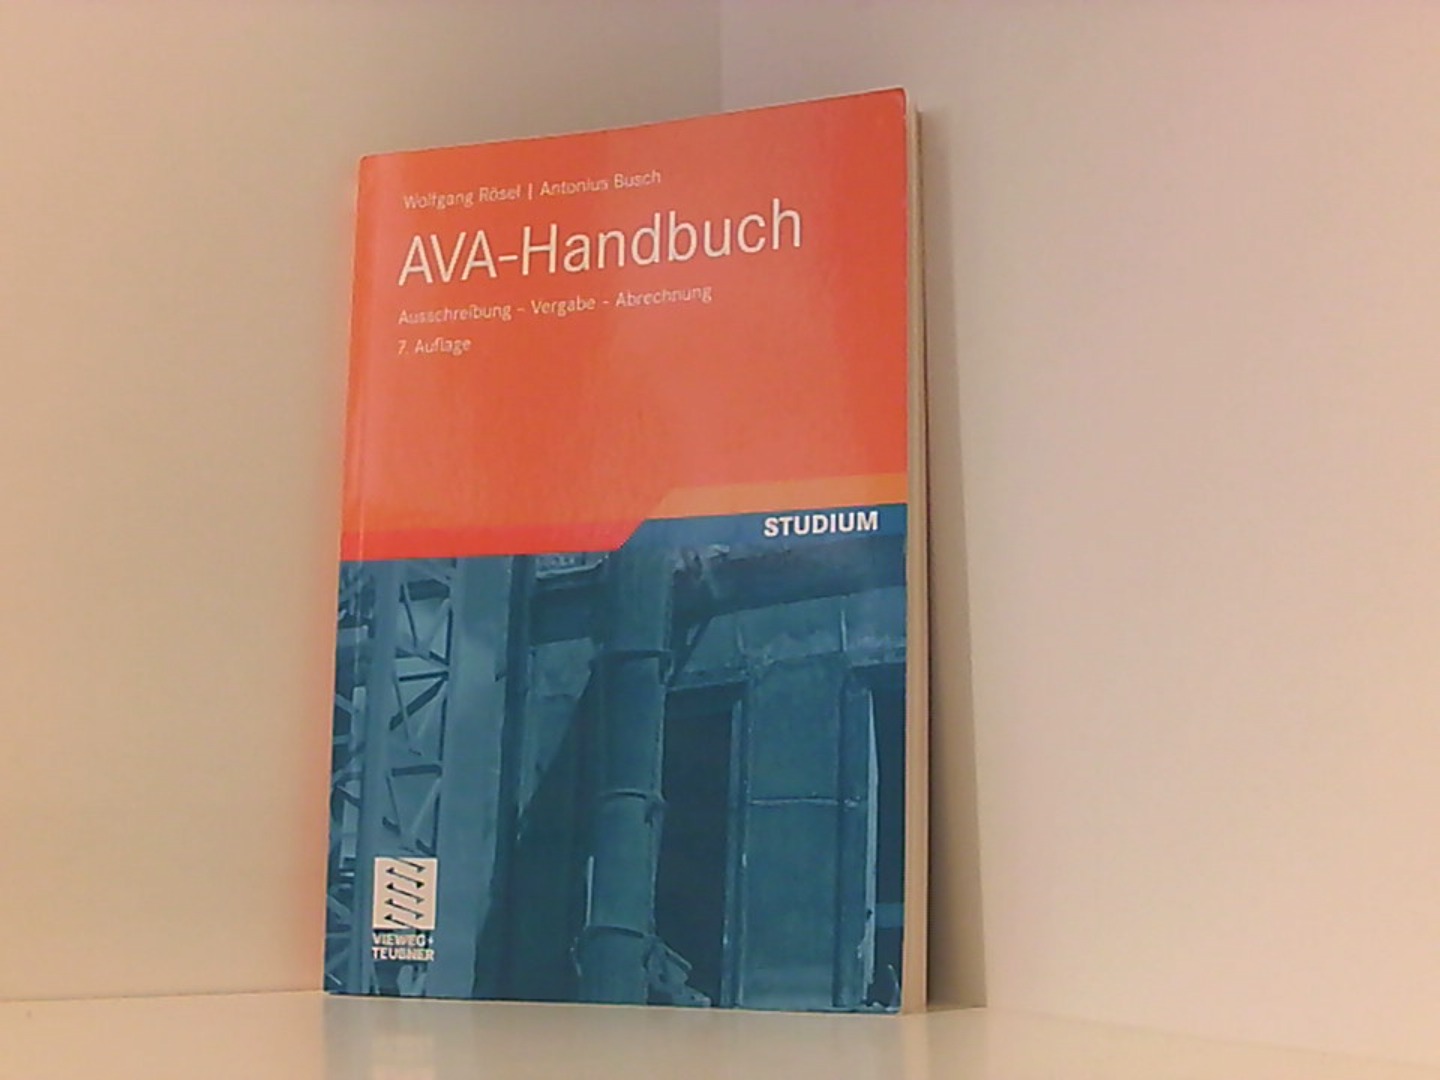 AVA-Handbuch: Ausschreibung - Vergabe - Abrechnung - Rösel, Wolfgang und Antonius Busch